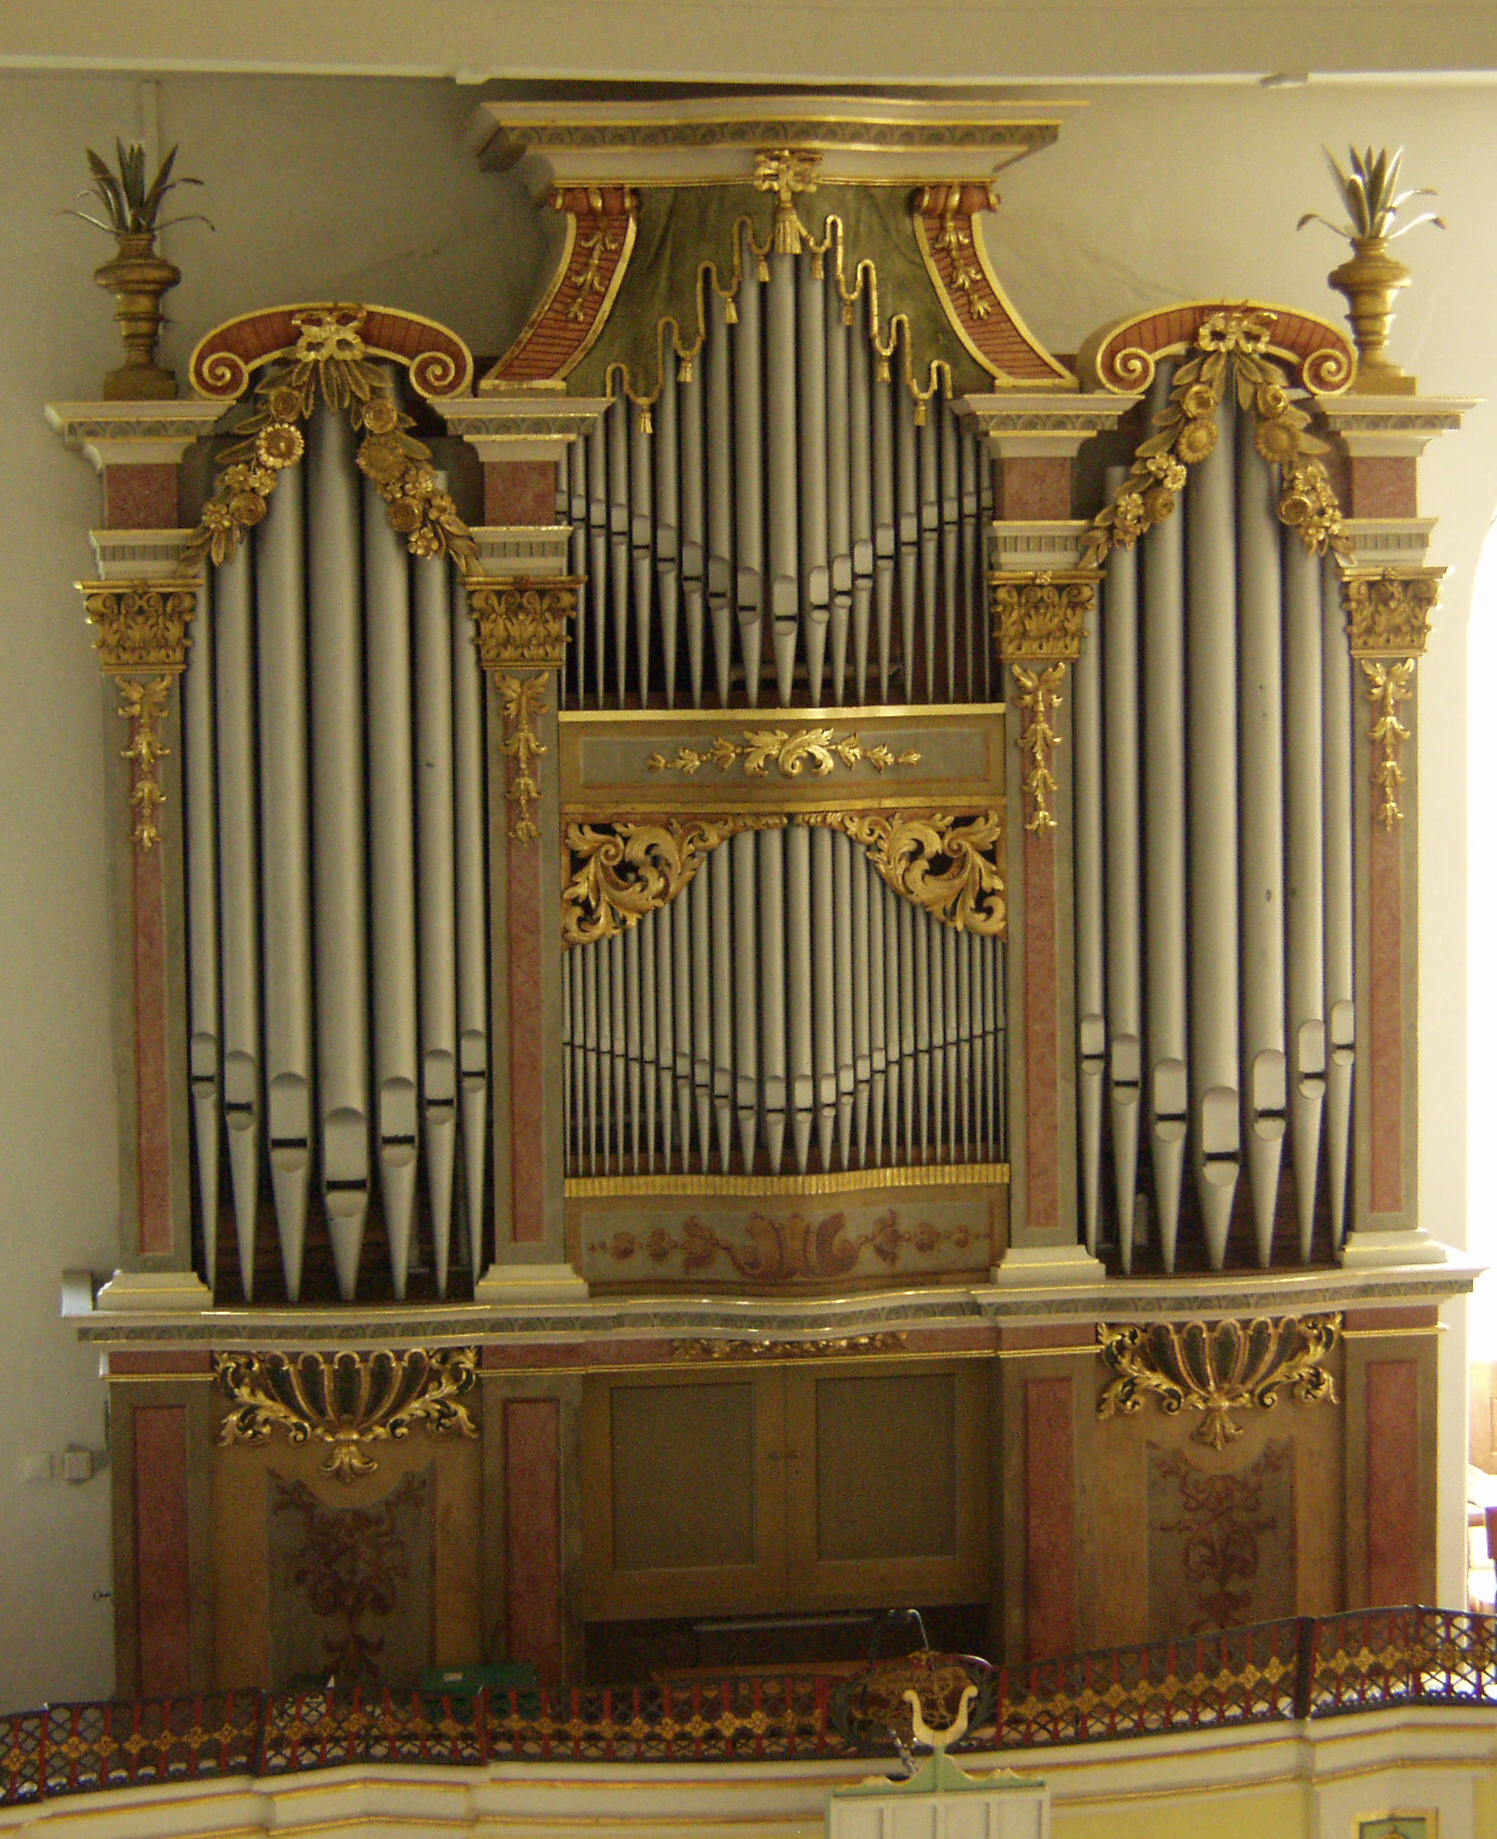 Ev. Luth. Kirche Pretzschendorf Restaurierung. Orgelprospeckt Barockfassung nach Restaurierung.